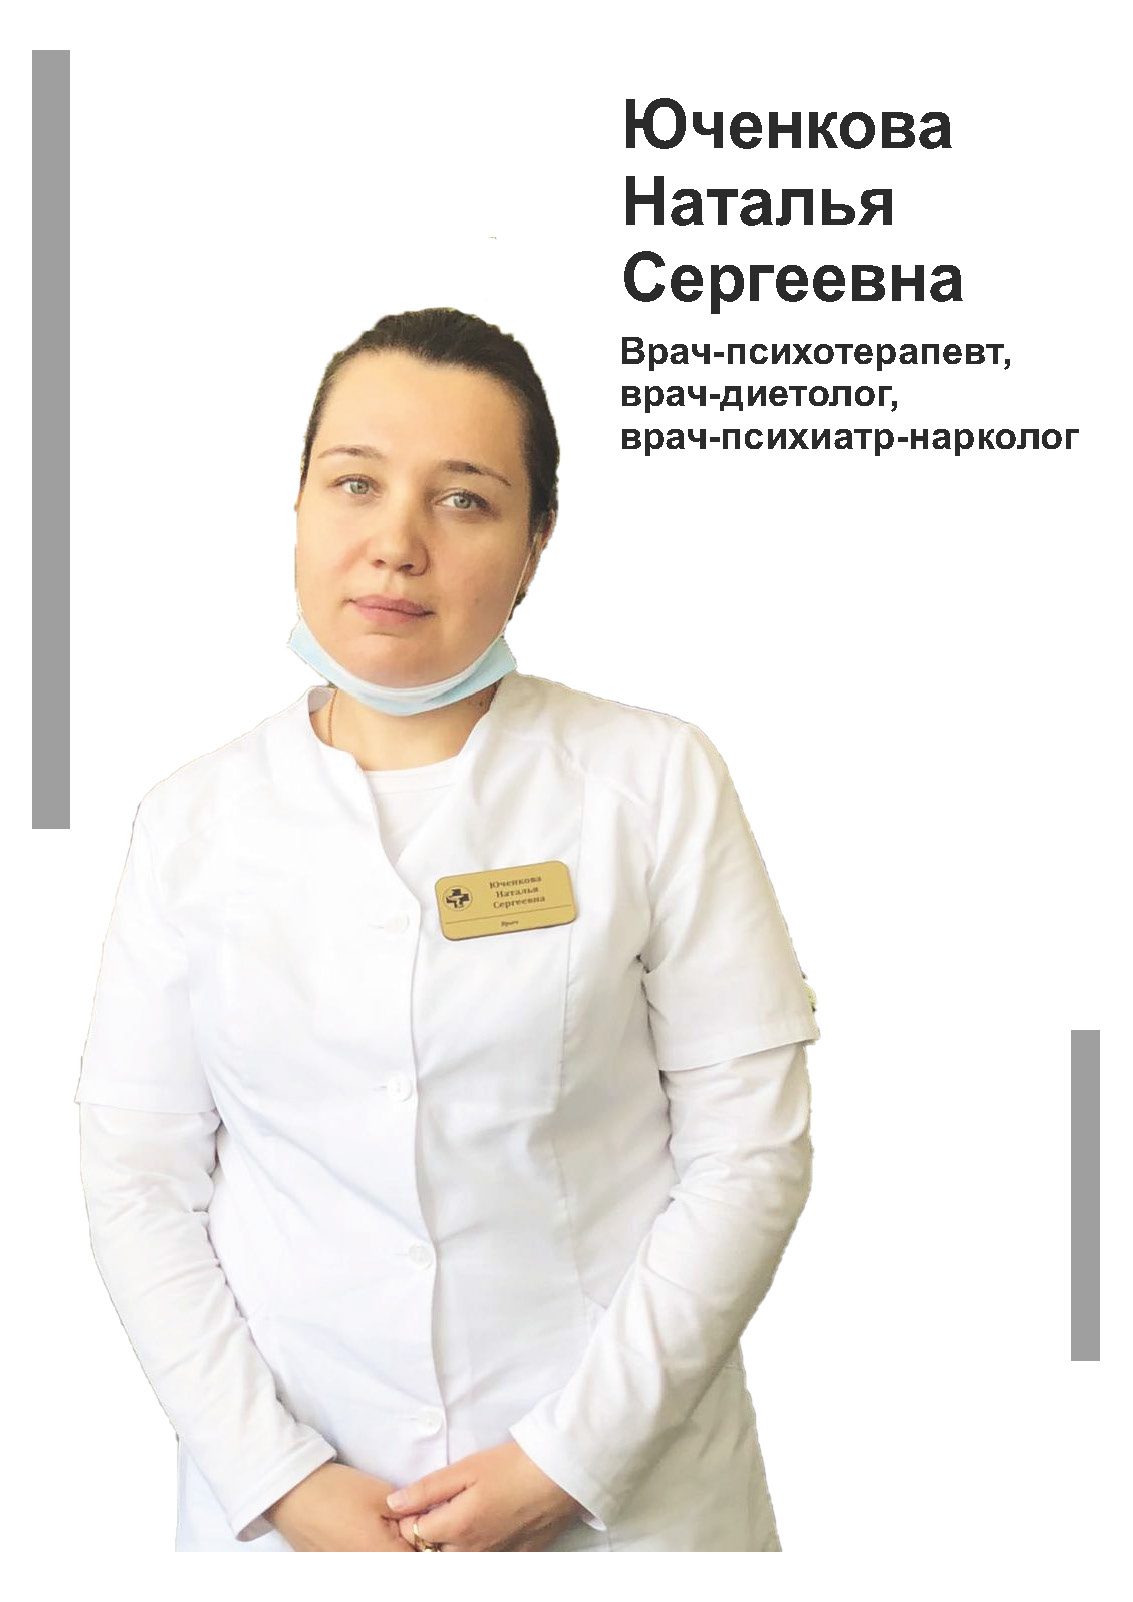 Юченкова Наталья Сергеевна - терапевт, психиатр-нарколог, психотерапевт, диетолог в клинике Lezaffe г. Югорск